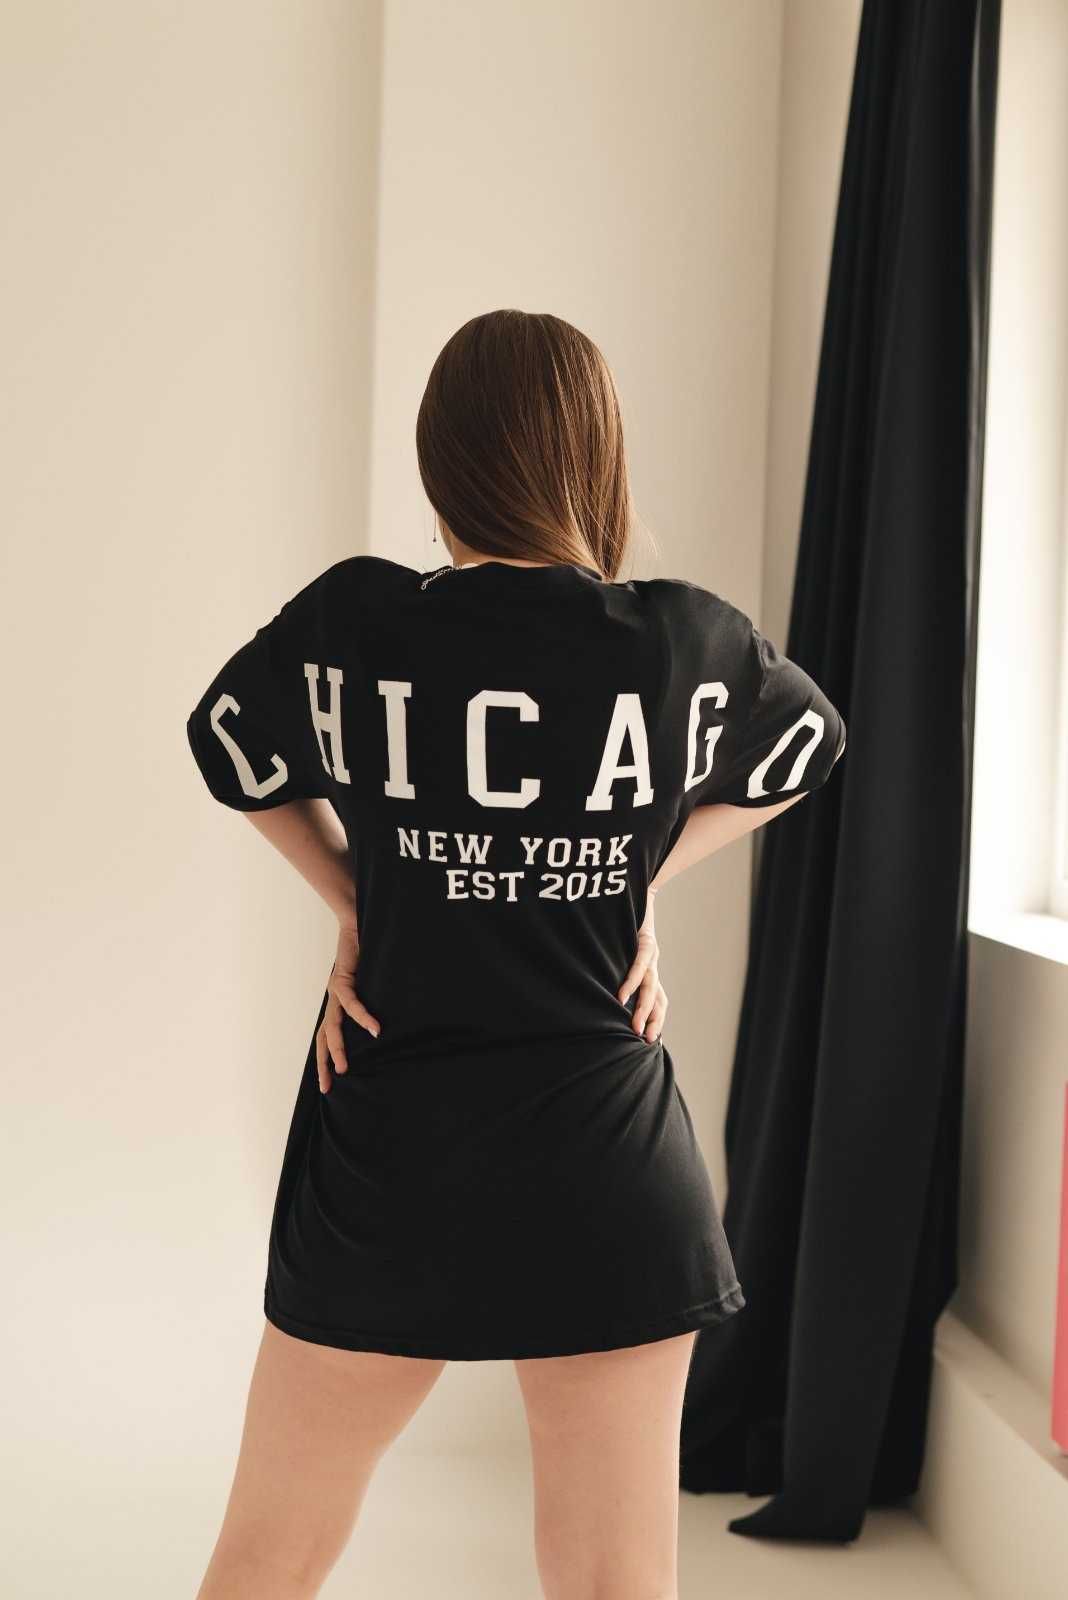 Топ продаж! Стильная Женская футболка oversize Chicago размер 42-48